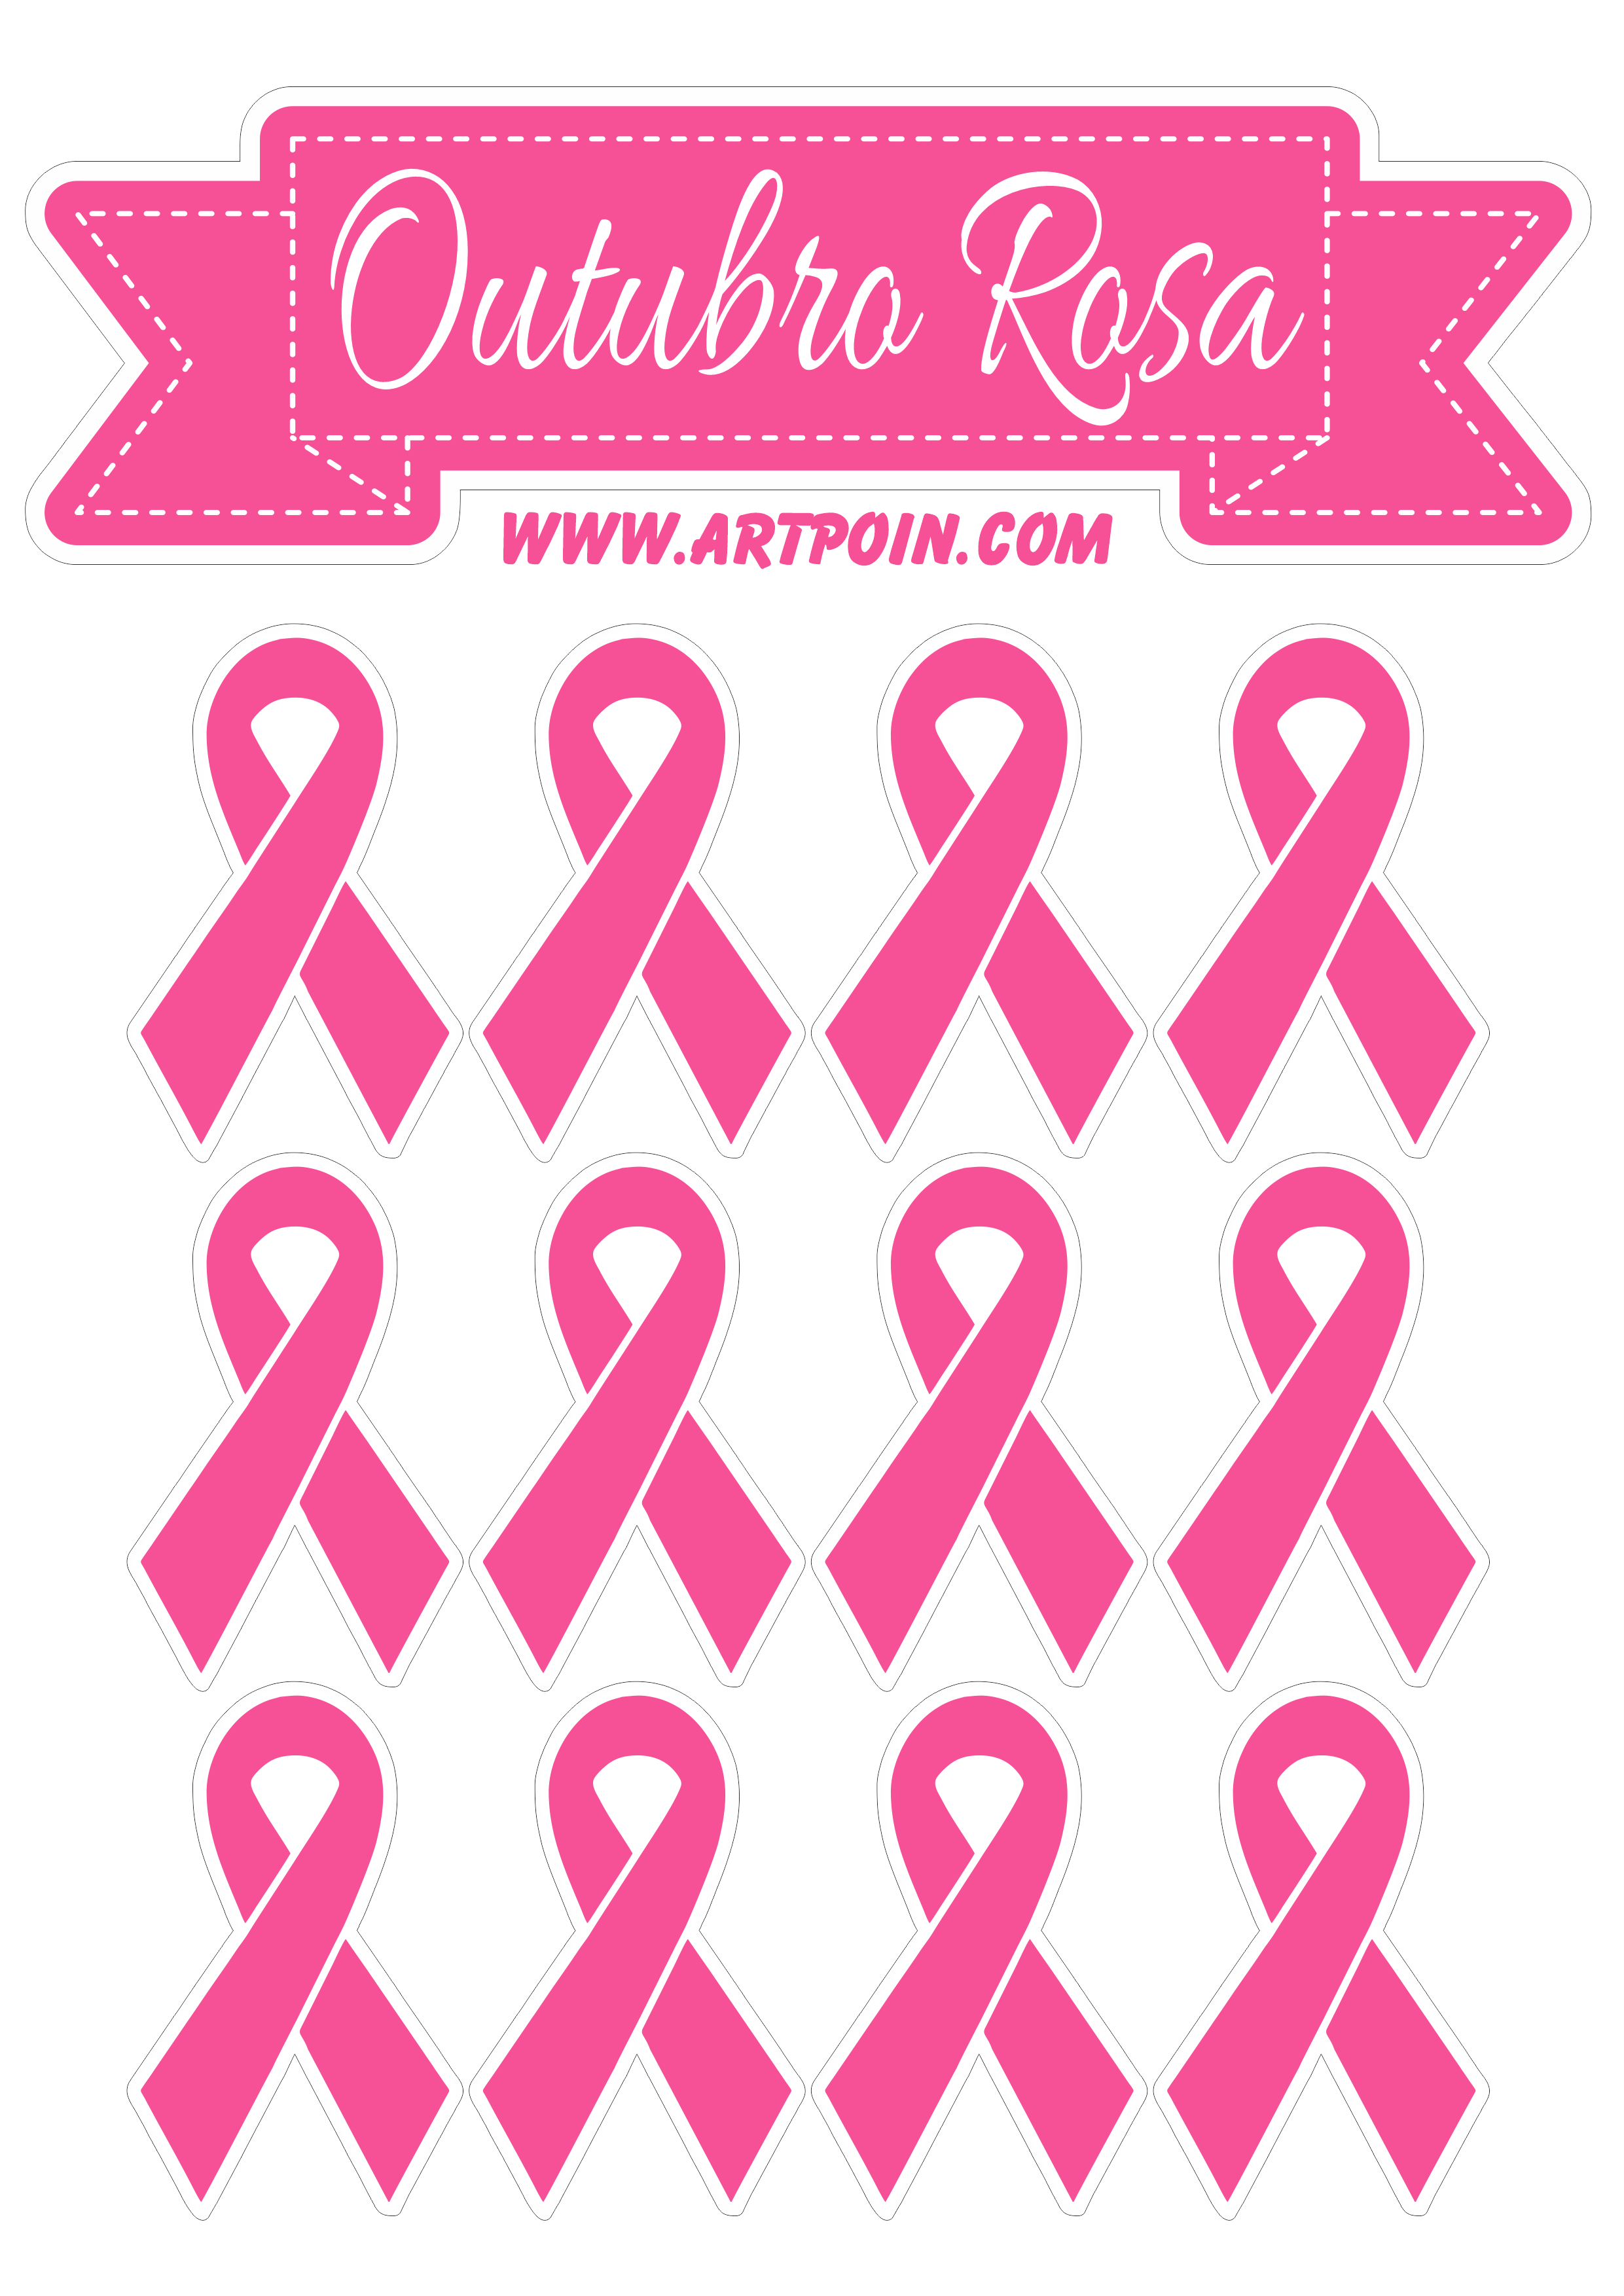 Outubro rosa Mês de prevenção ao câncer de mama decoração artes gráficas png